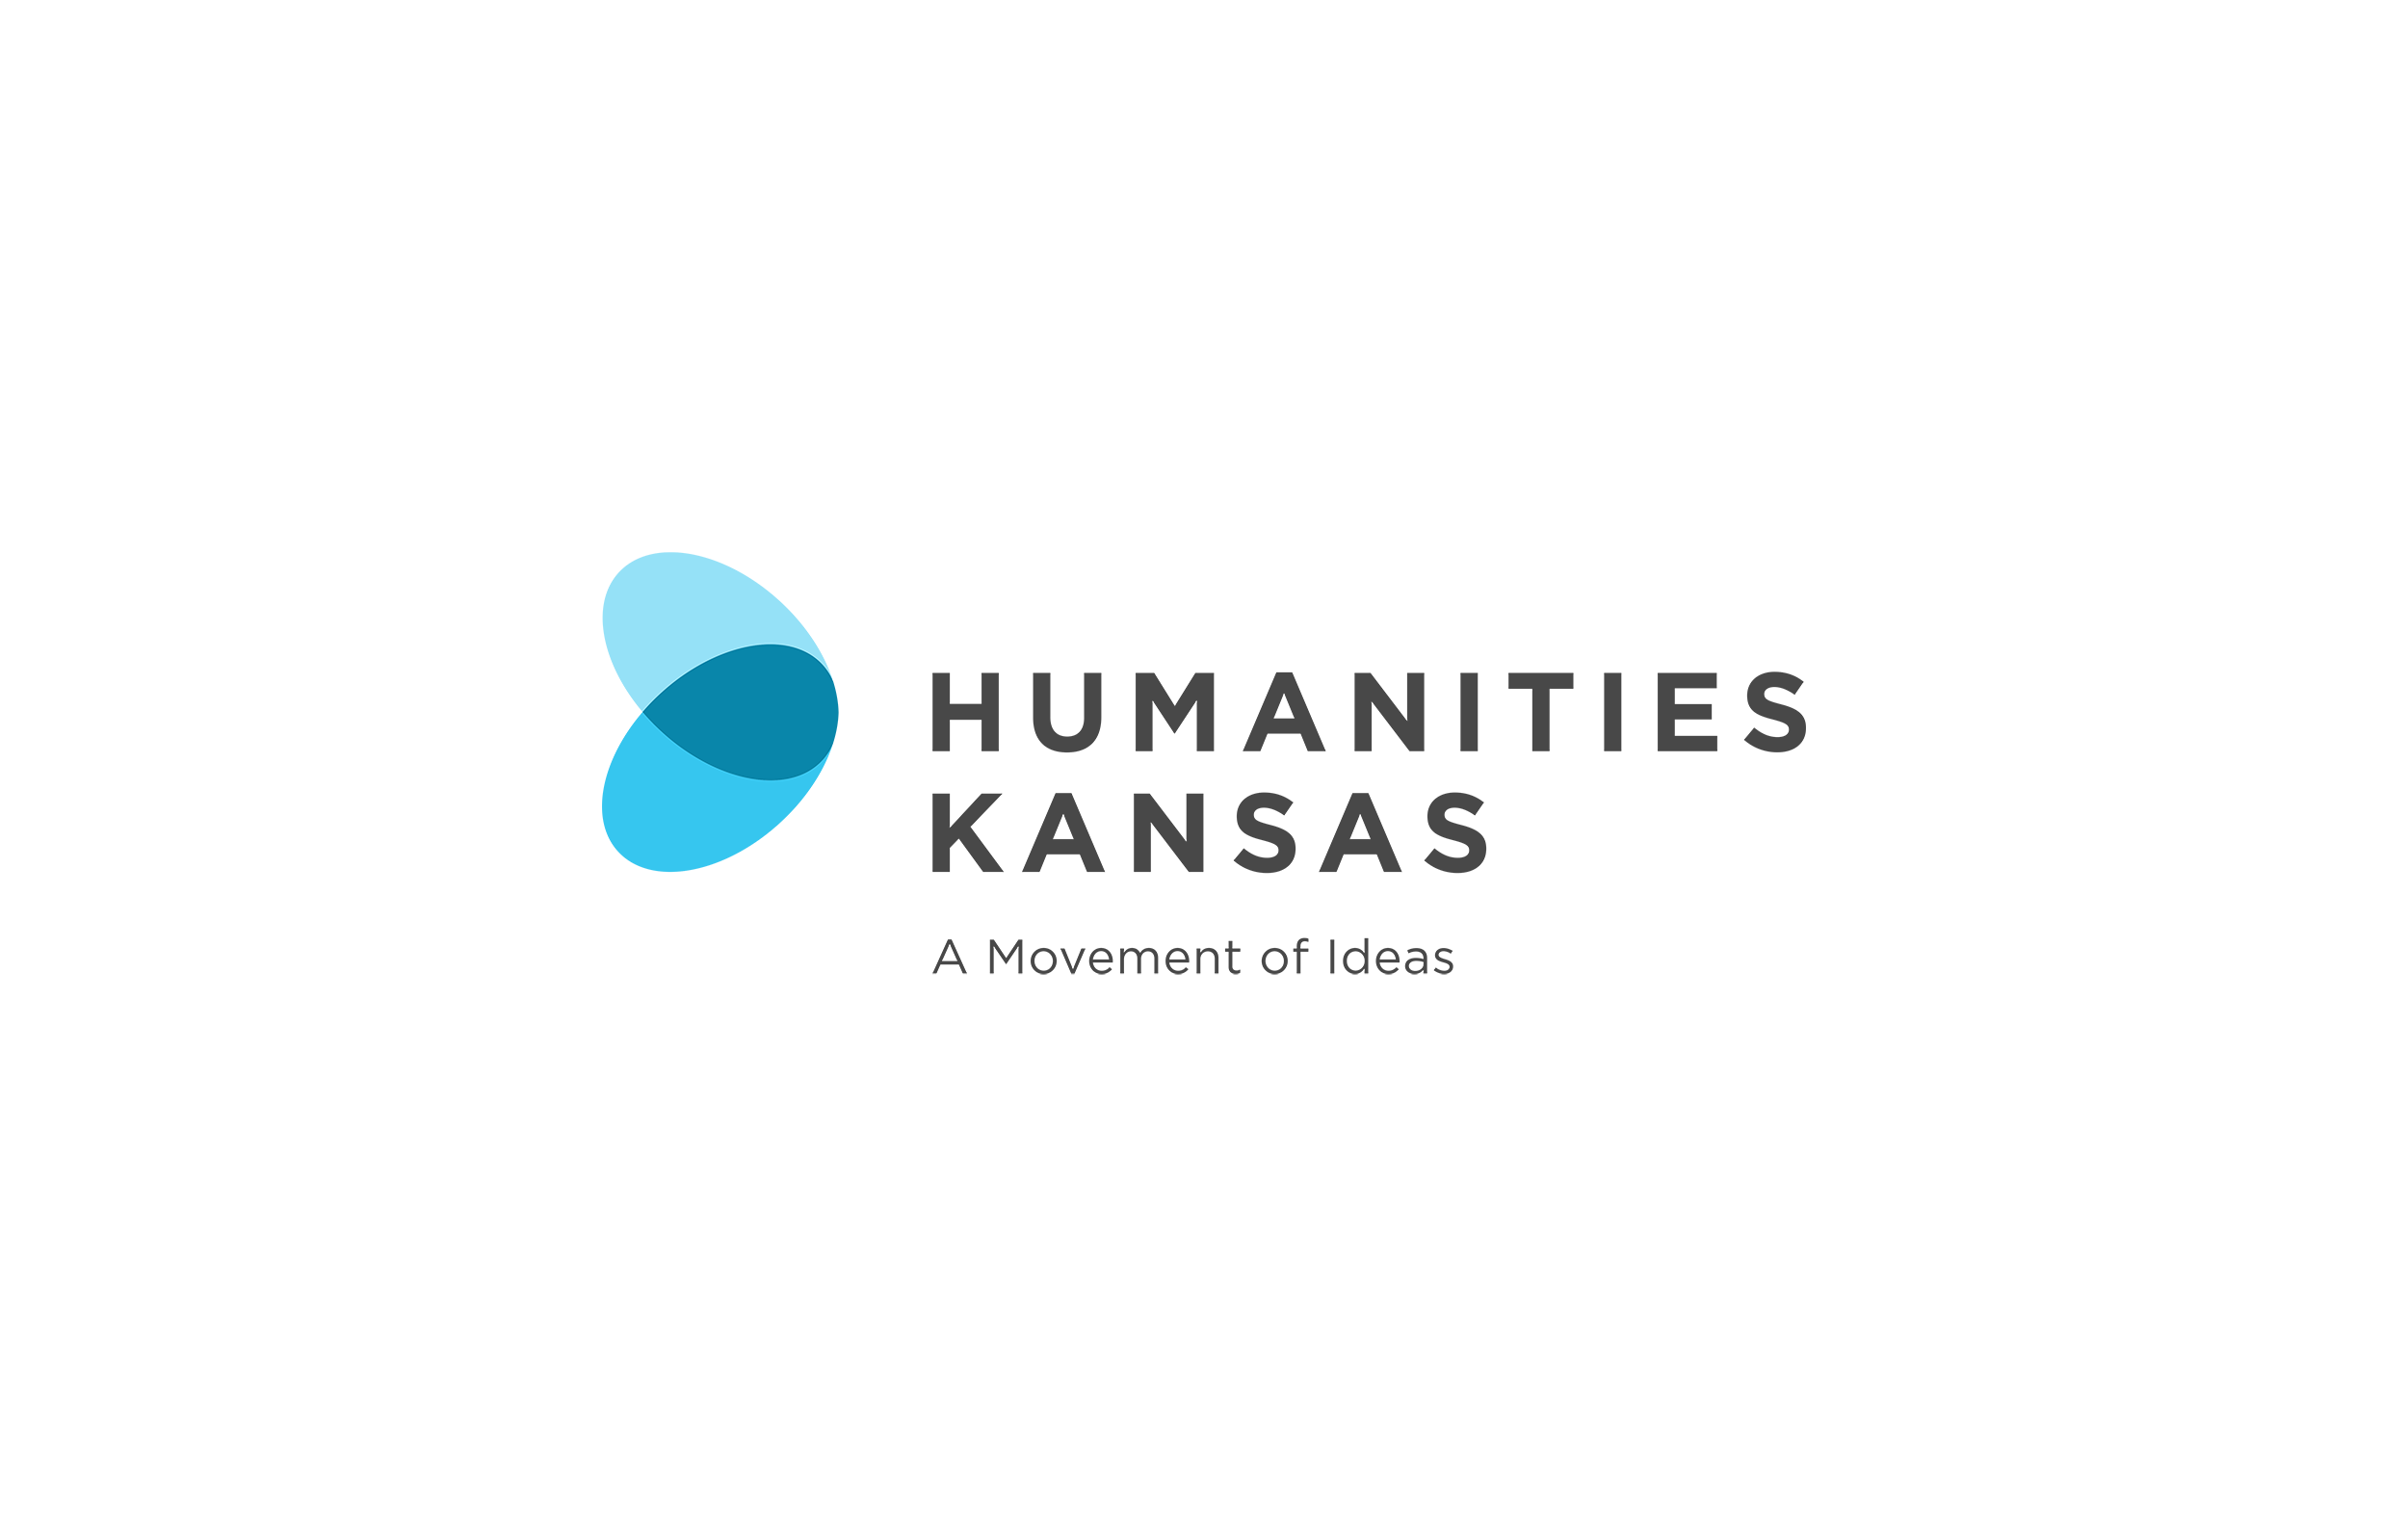 HK Logos for Digital Use - Humanities Kansas